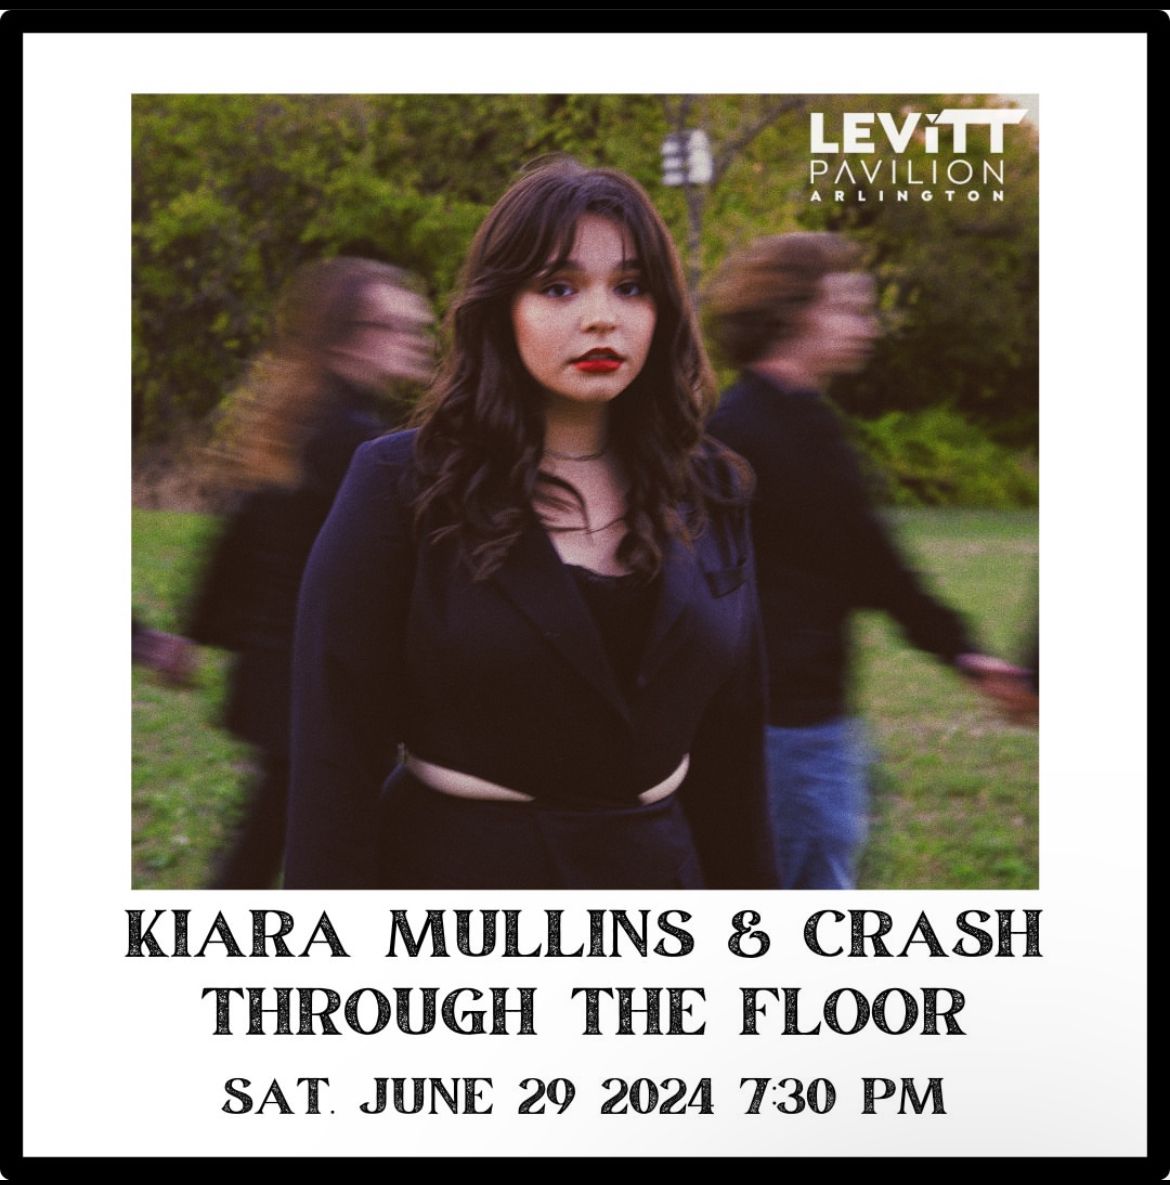 Kiara & Crash LIVE @ Levitt Pavilion